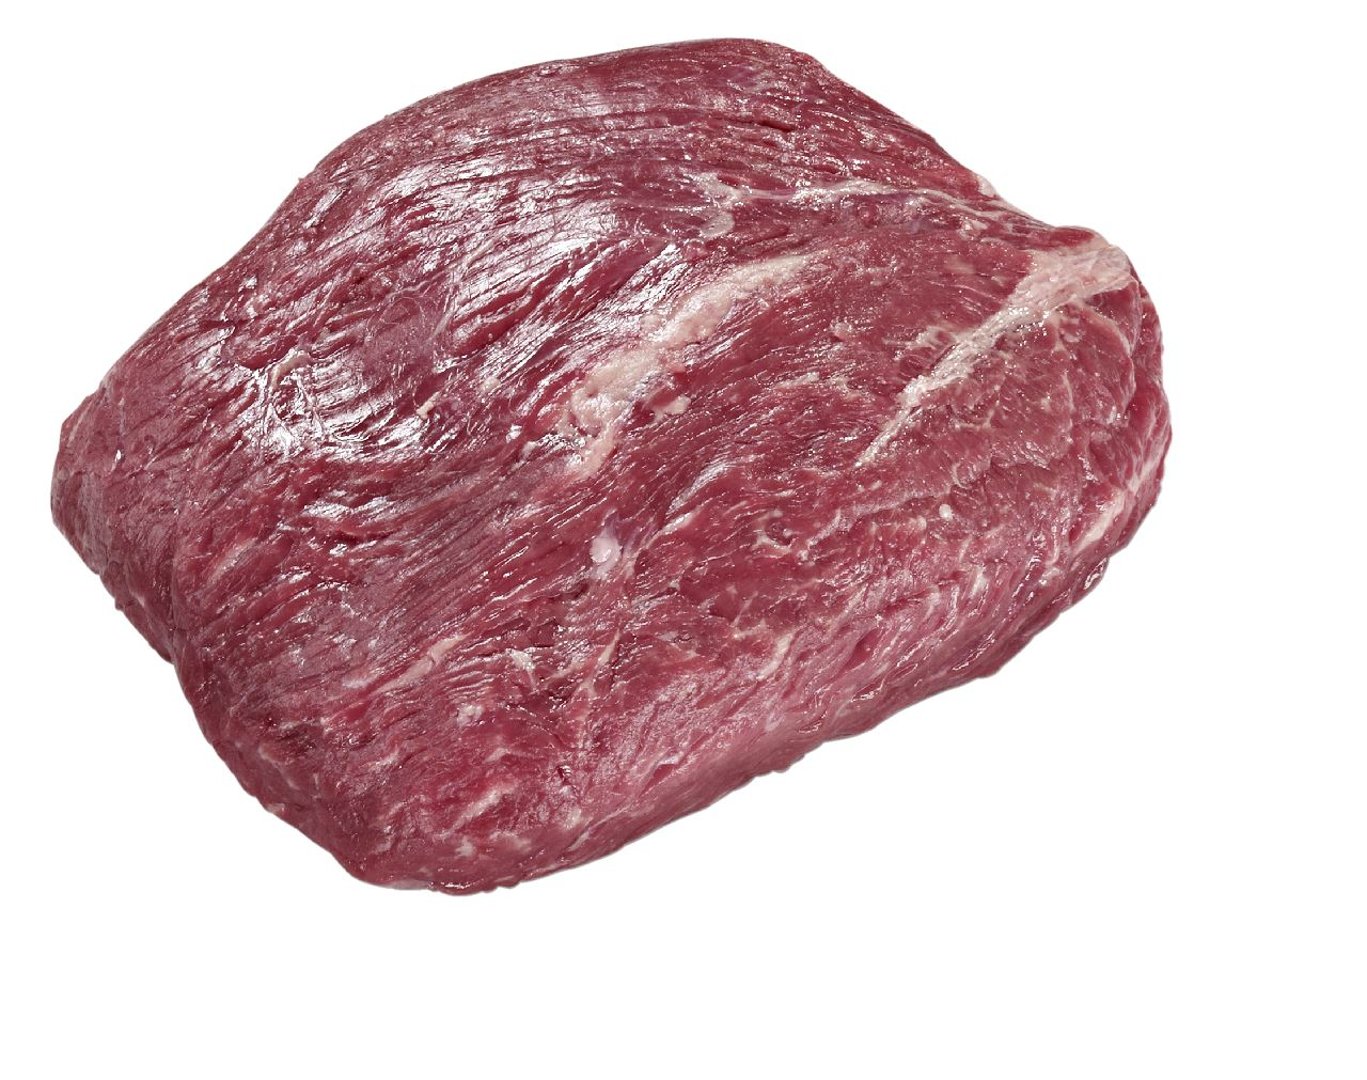 METRO Premium - argentinische Steakhüfte großer Muskel - 1,2 kg